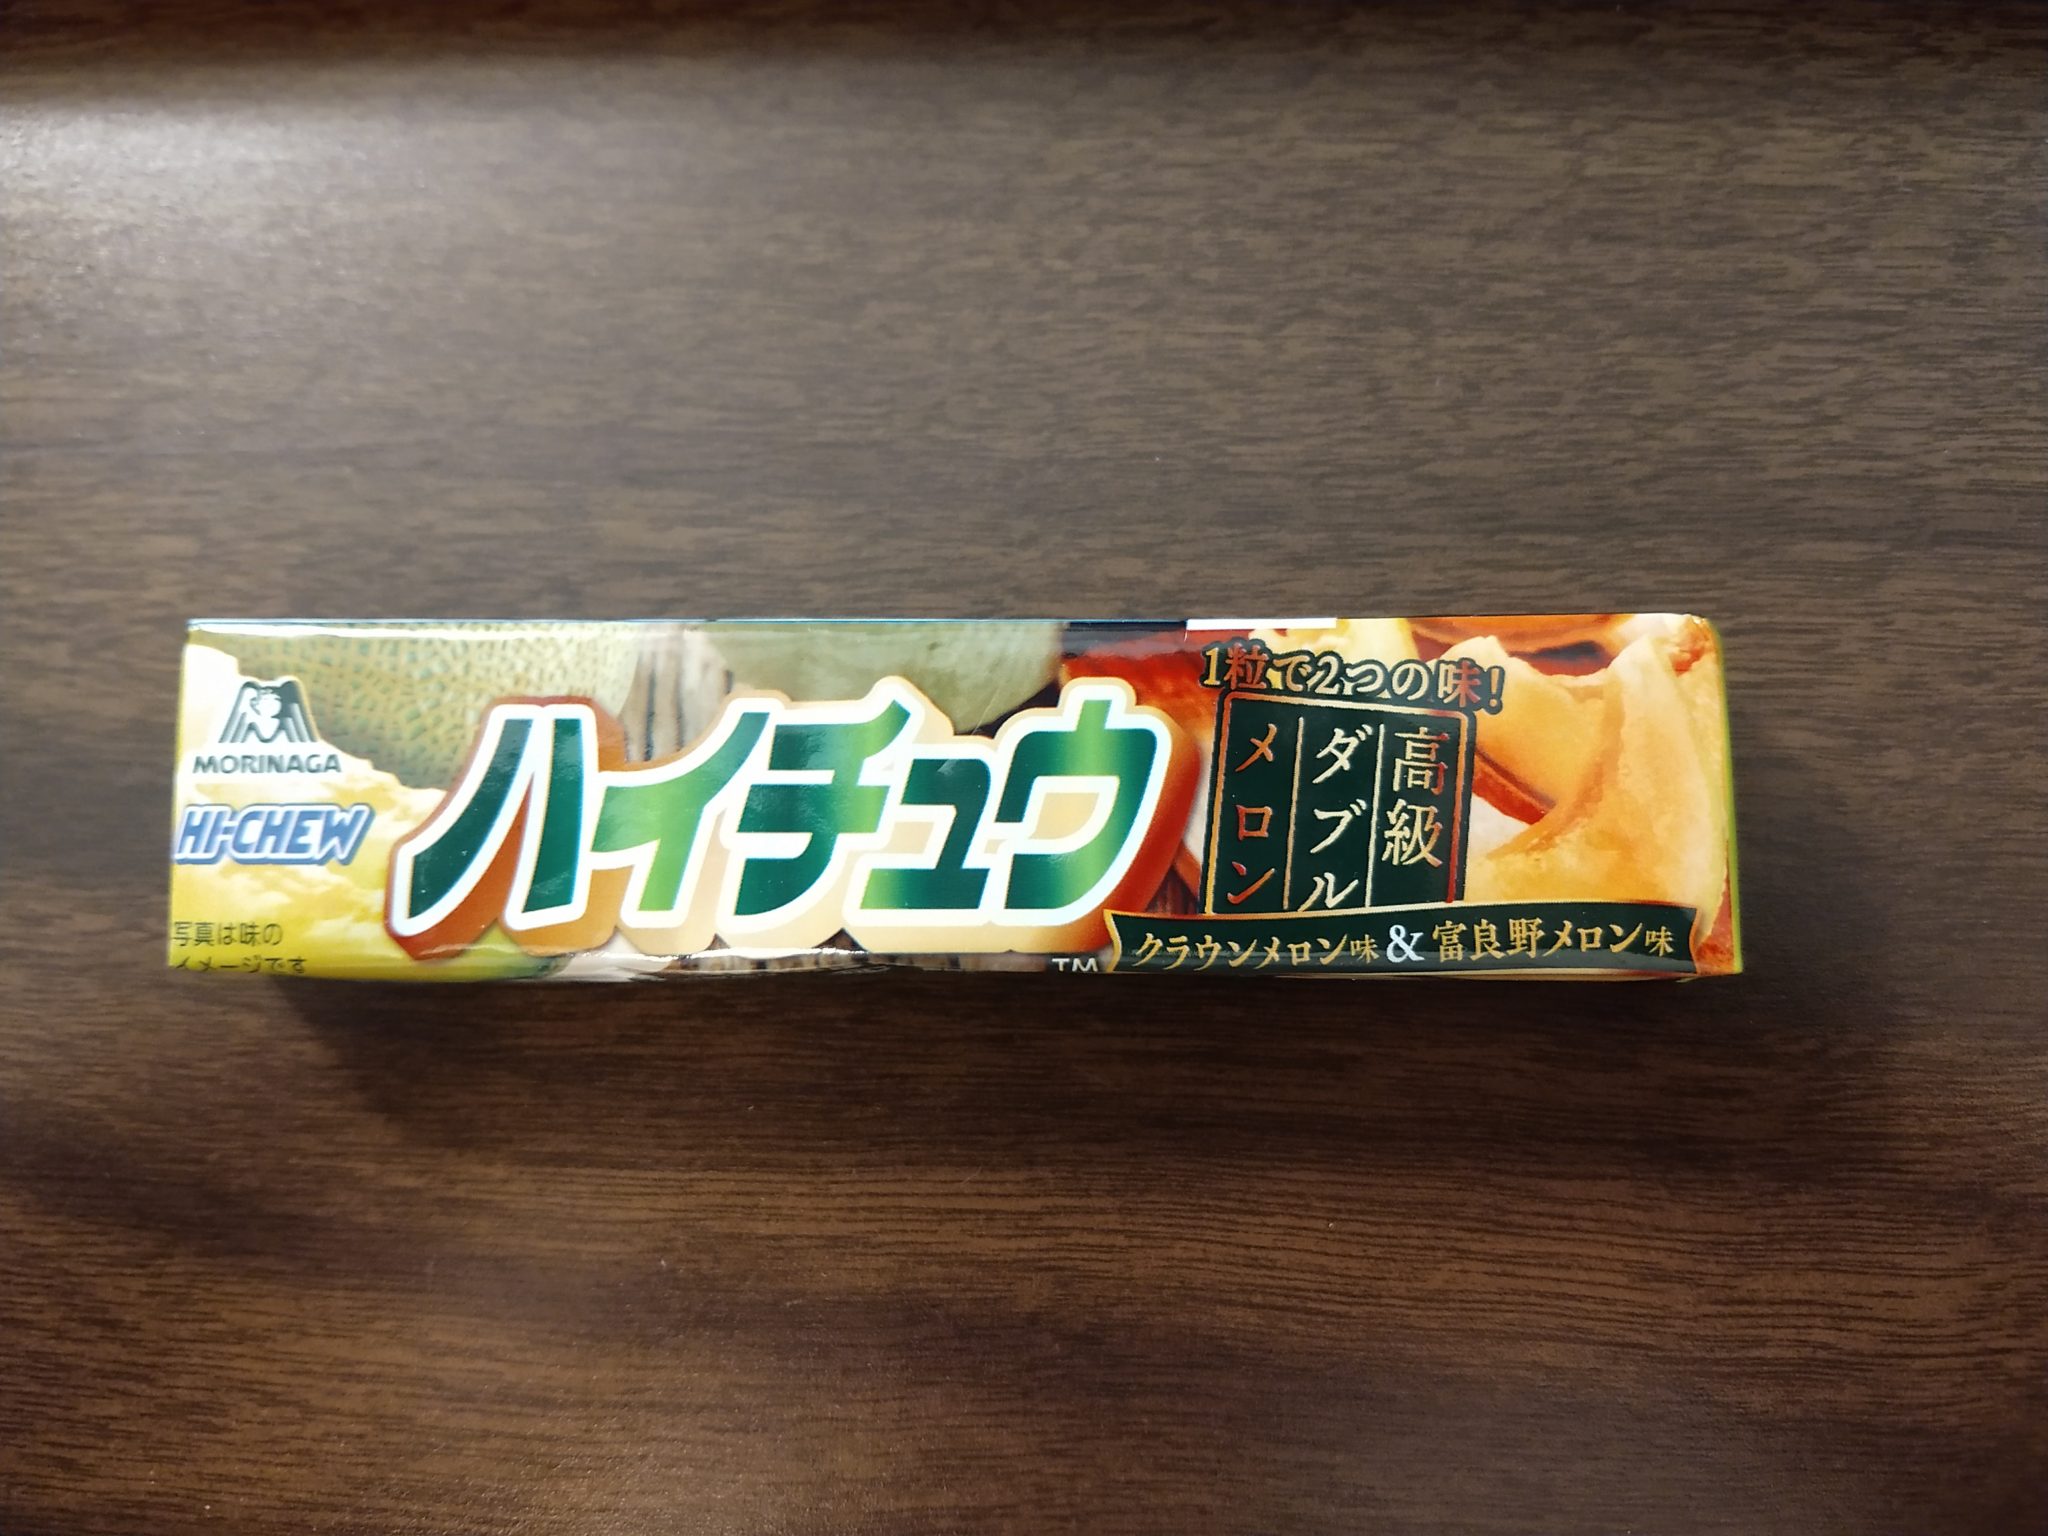 Hi-Chew Doubles – Furano & Crown Melon